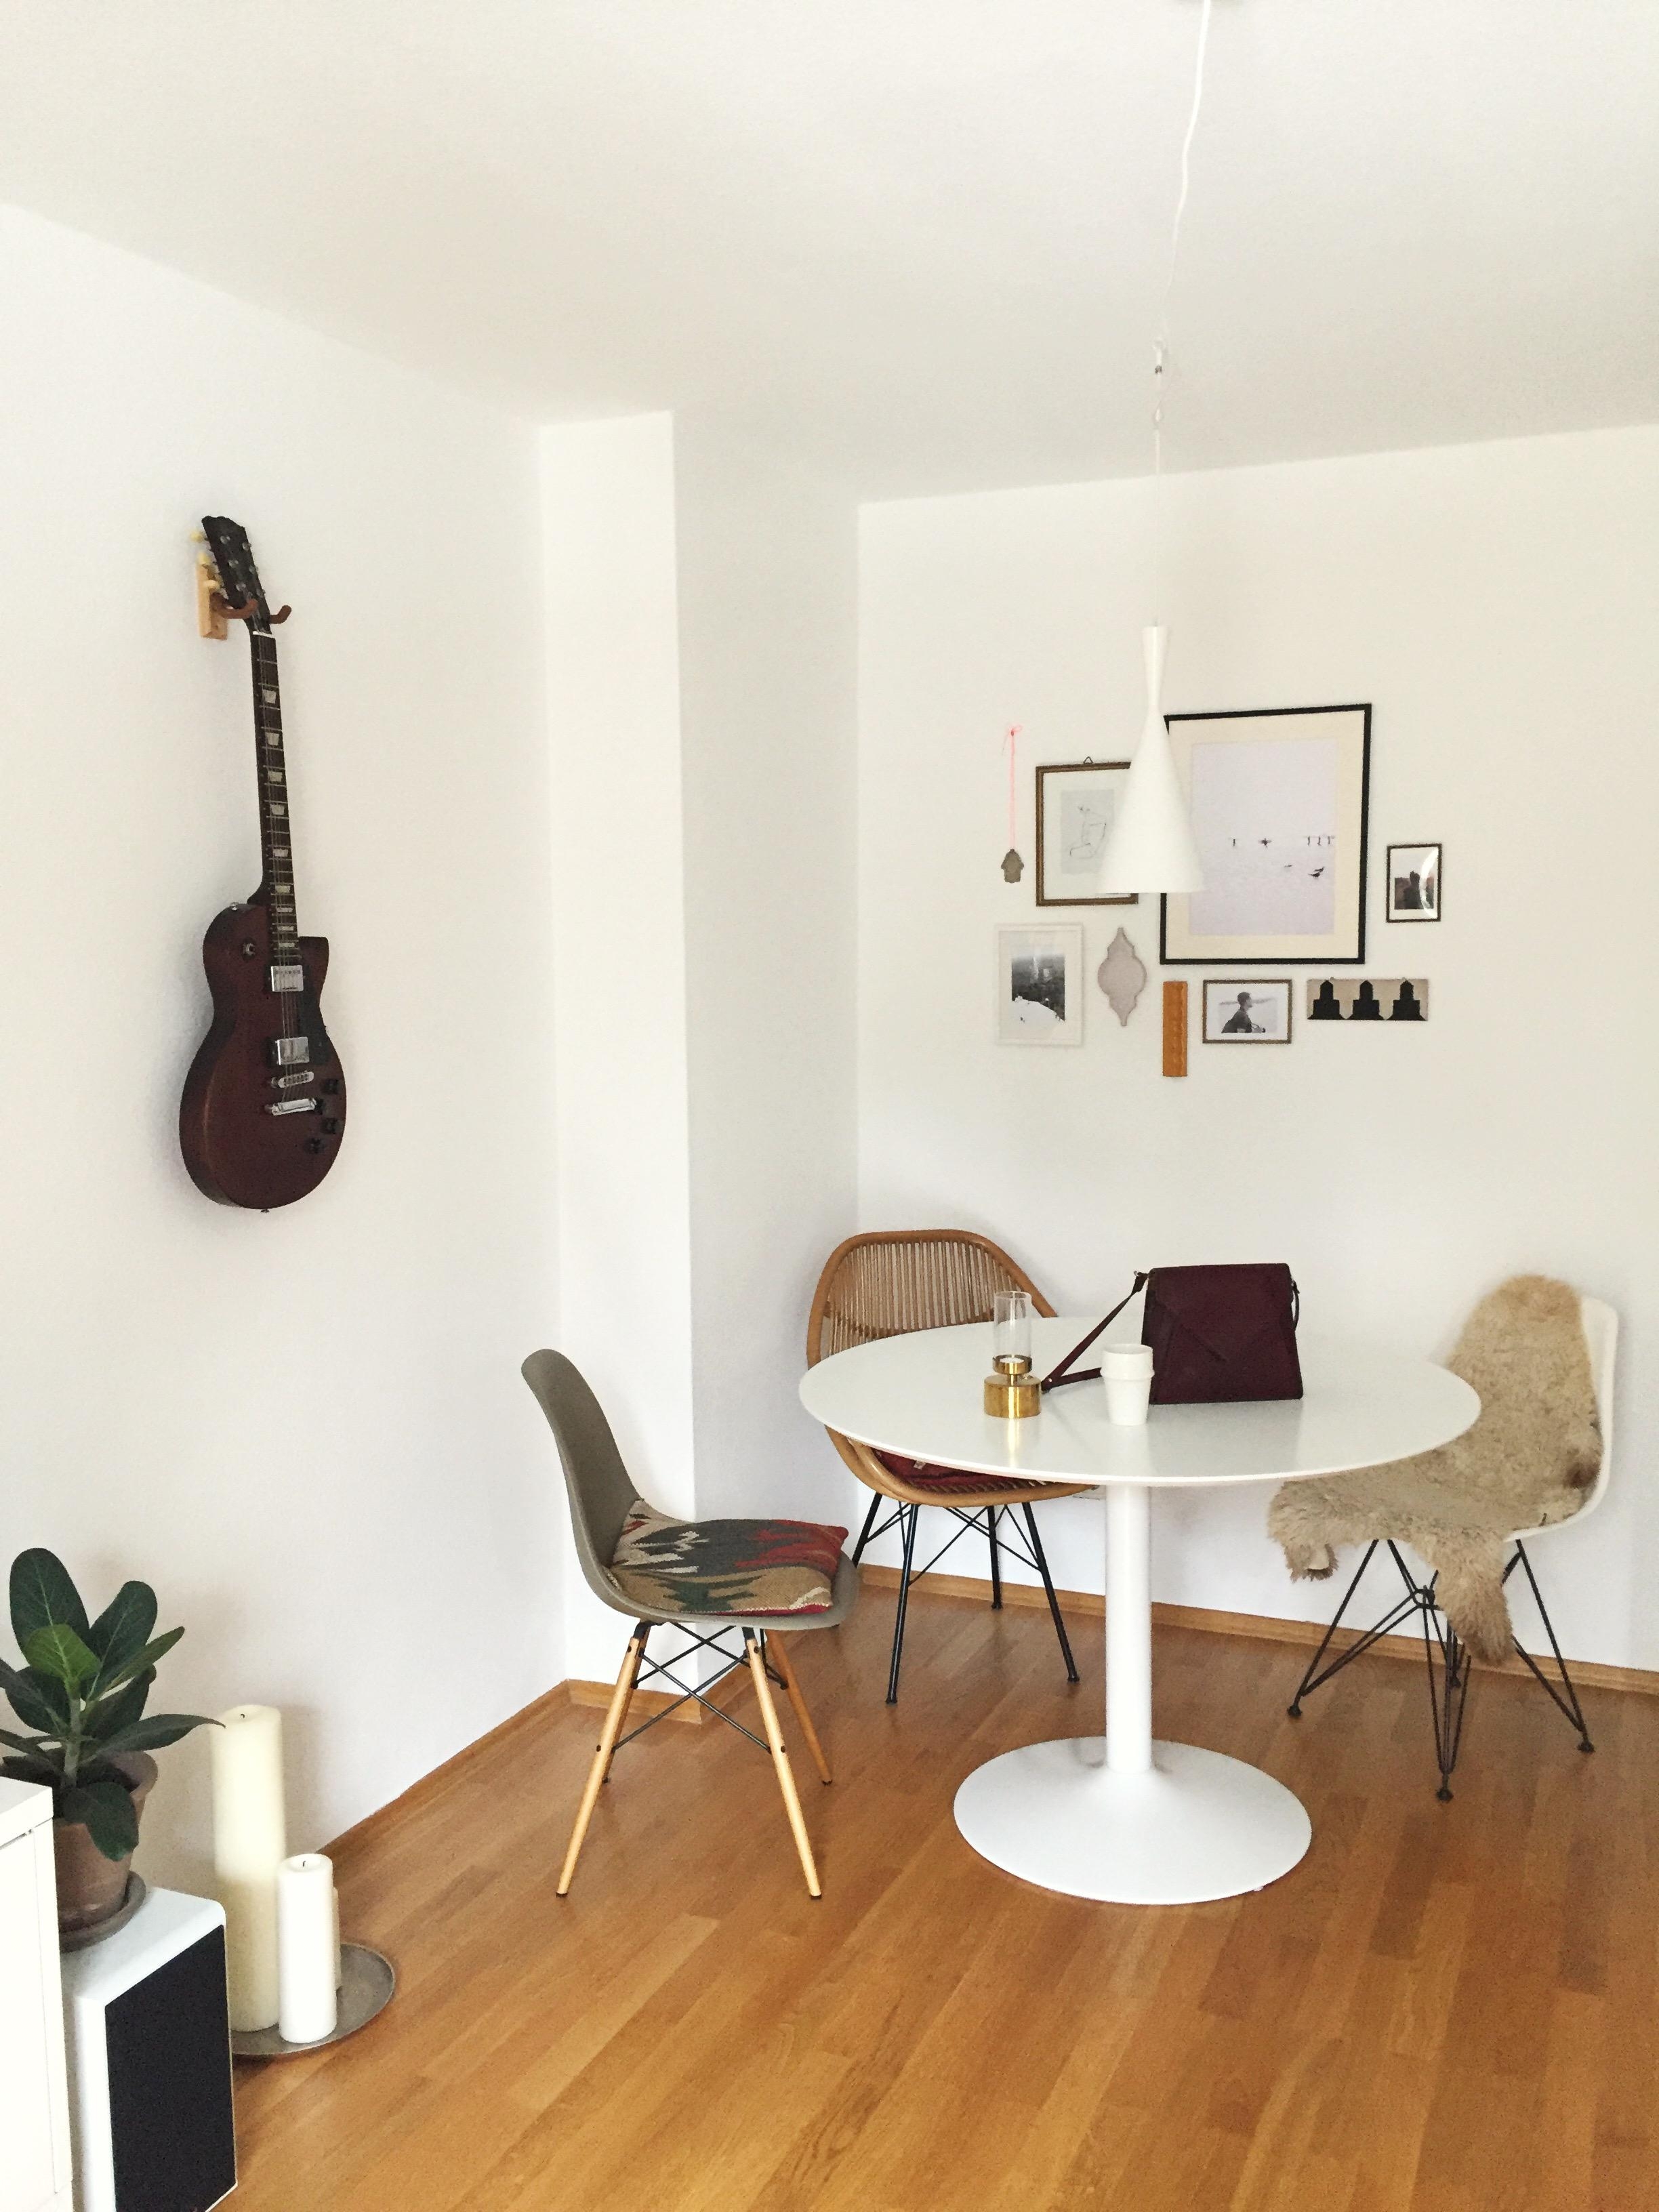 Neue Wohnung, neues Glück <3

#designliebe #interior #interieur #solebich #meinstyle 